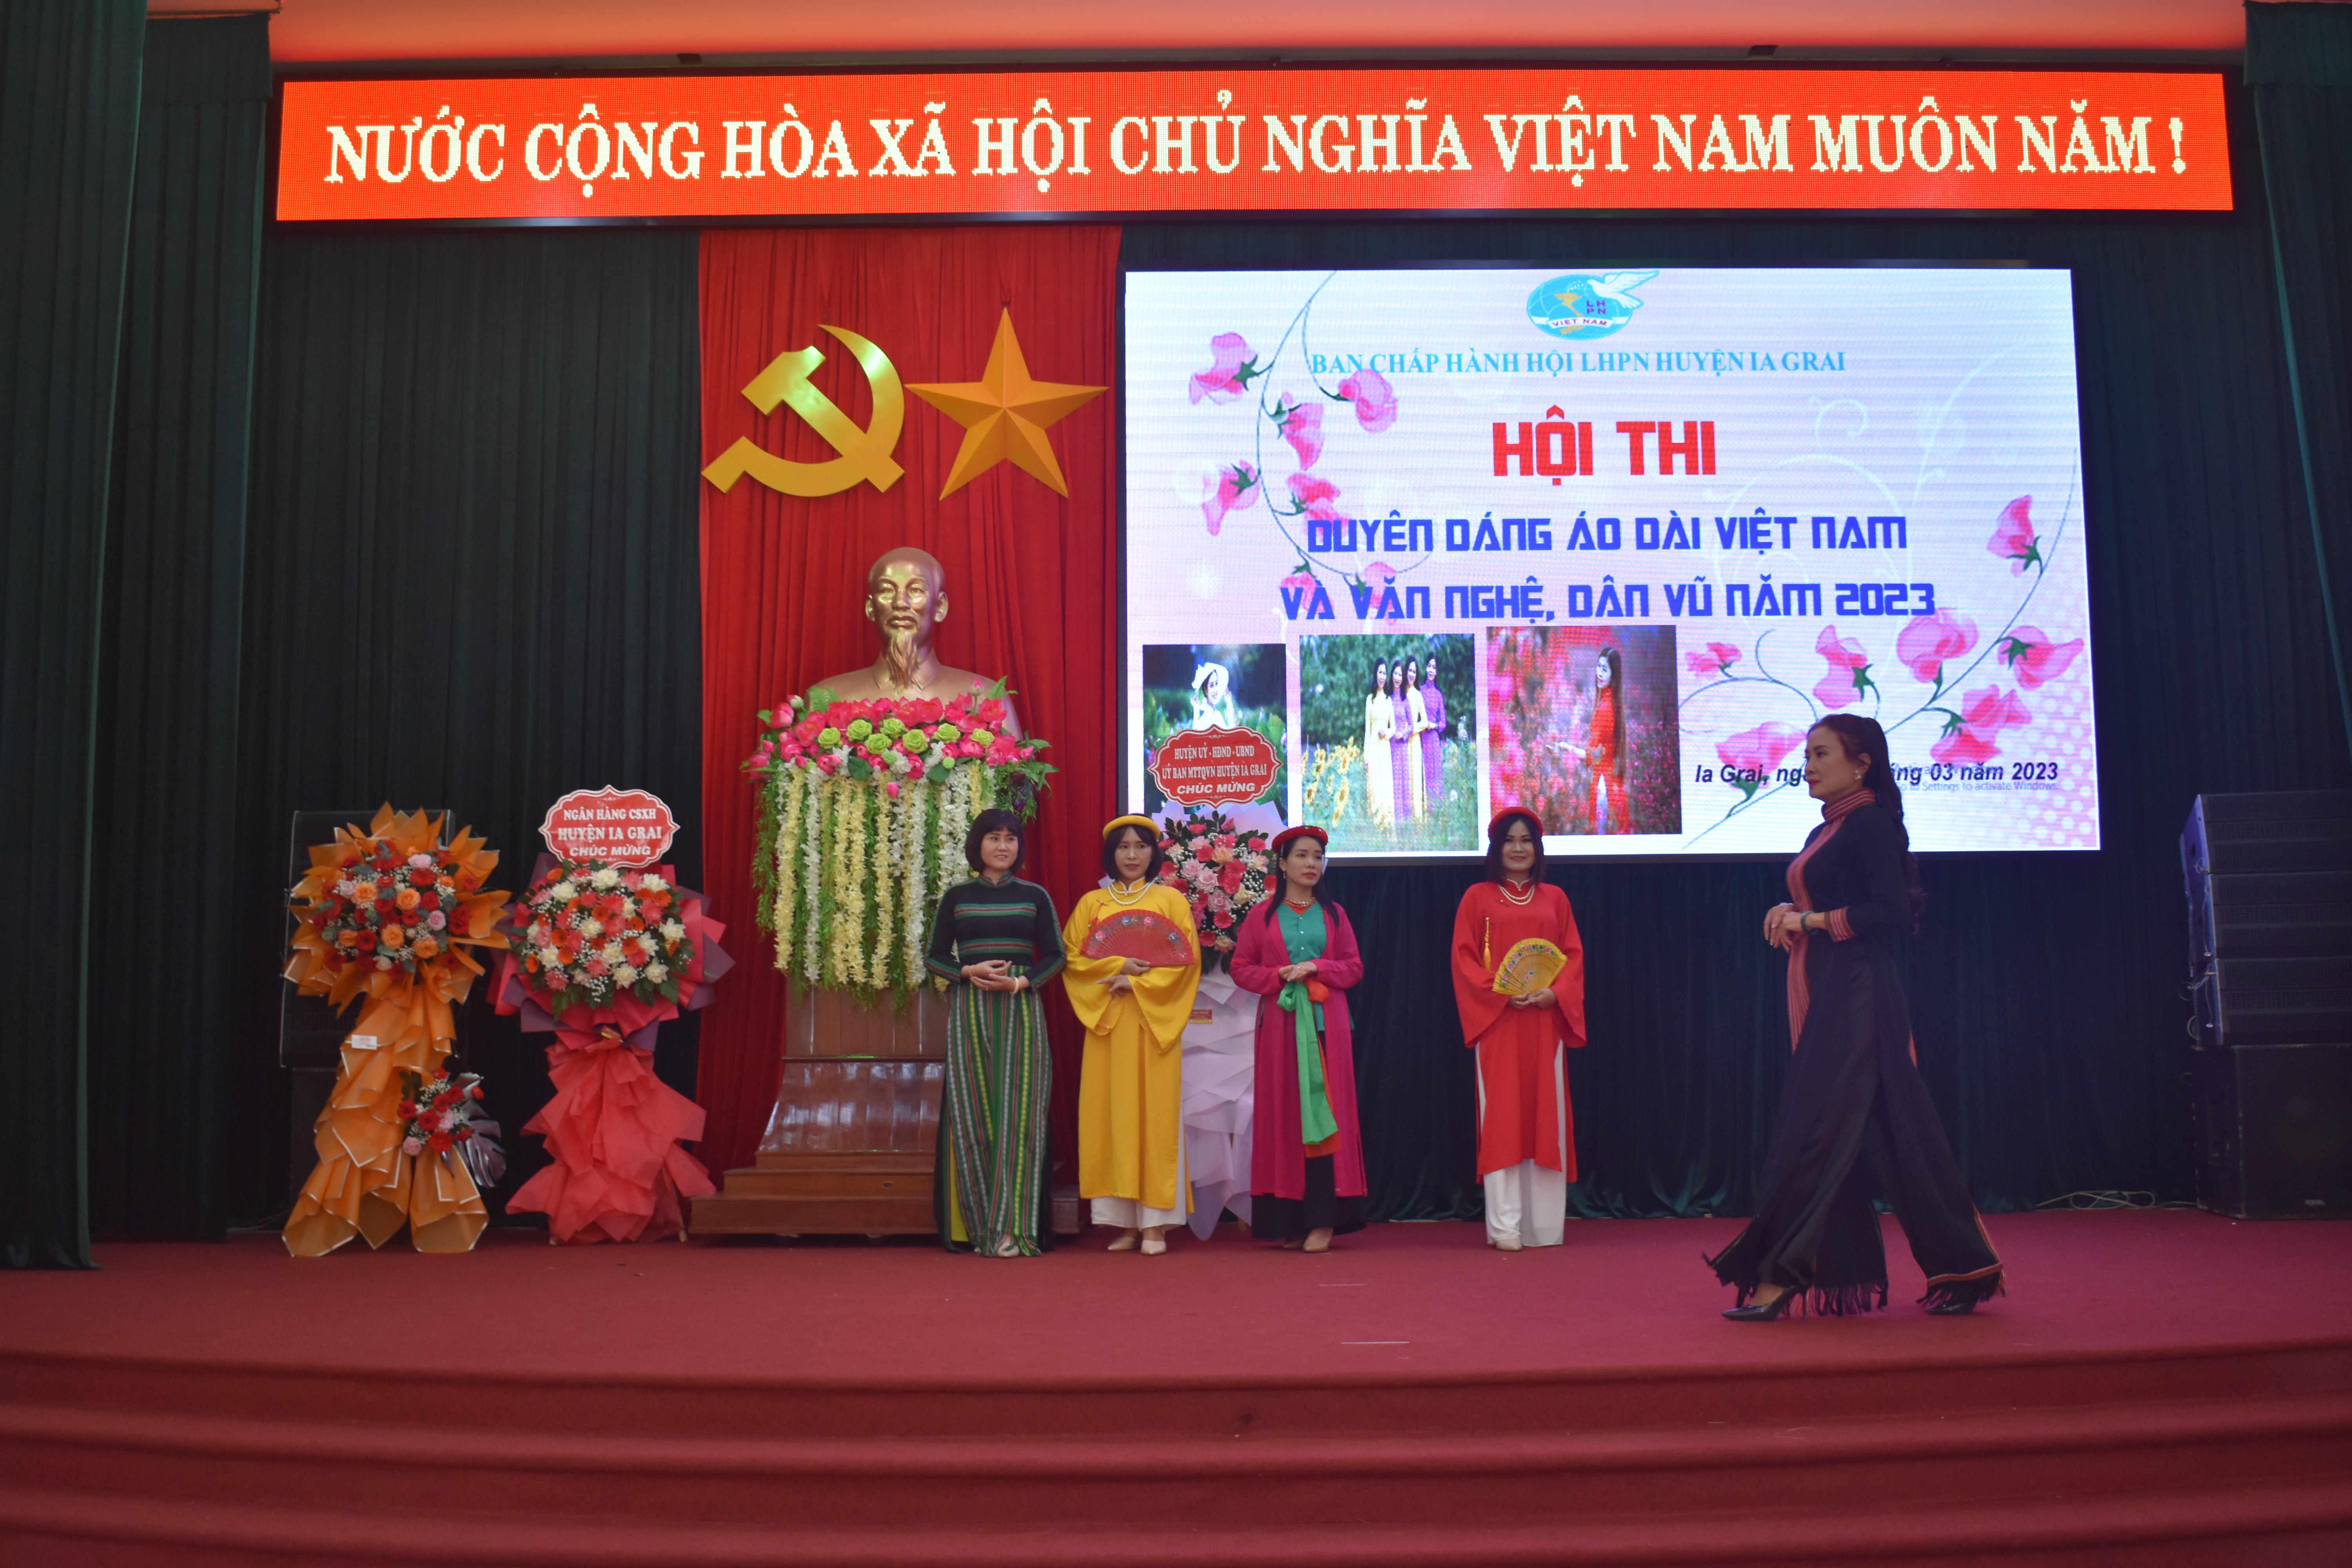 Article Hội thi “Duyên dáng áo dài Việt Nam và văn nghệ, dân vũ”.